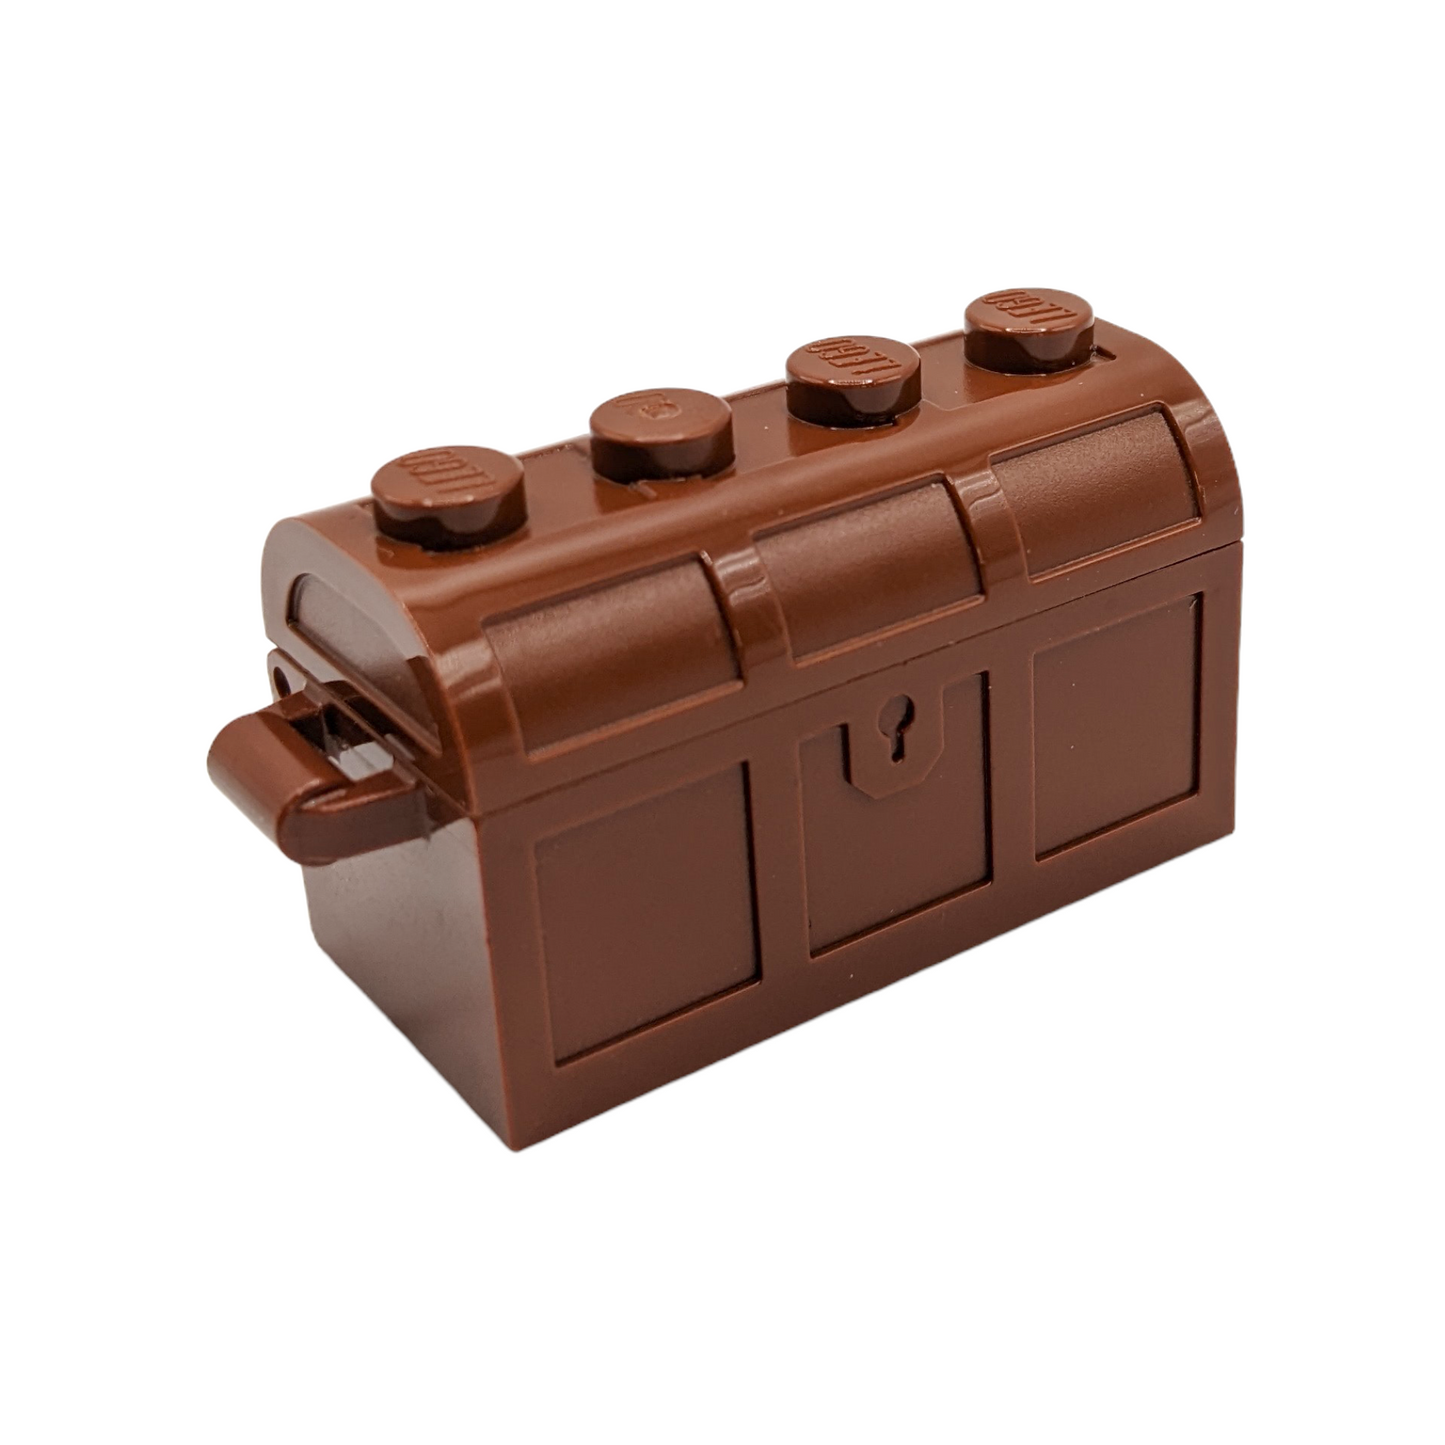 LEGO Container - Schatzkiste in Reddish Brown